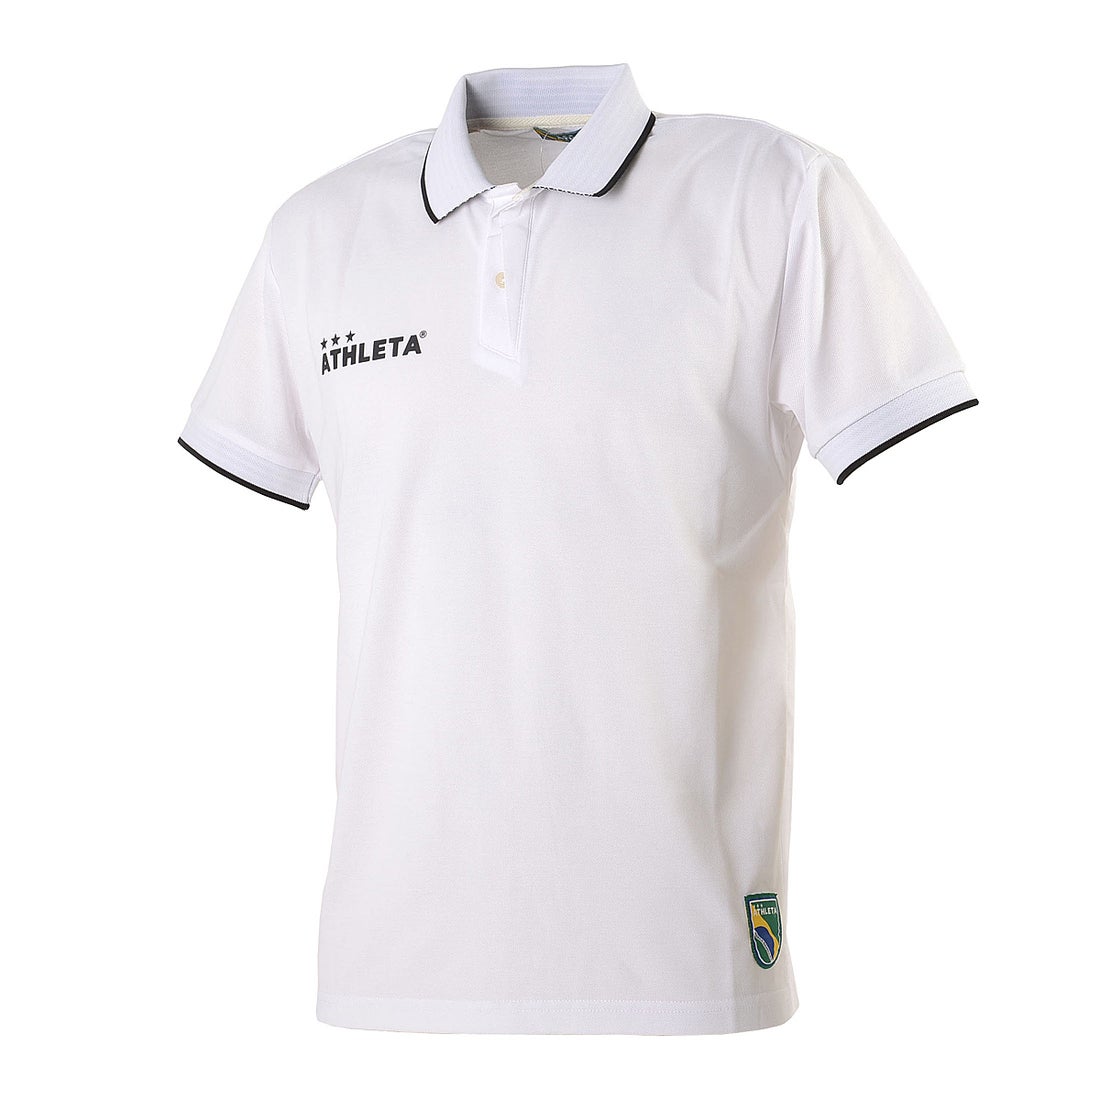 ATHLETA アスレタレディース半袖ポロシャツ ホワイト Sサイズ - 通販